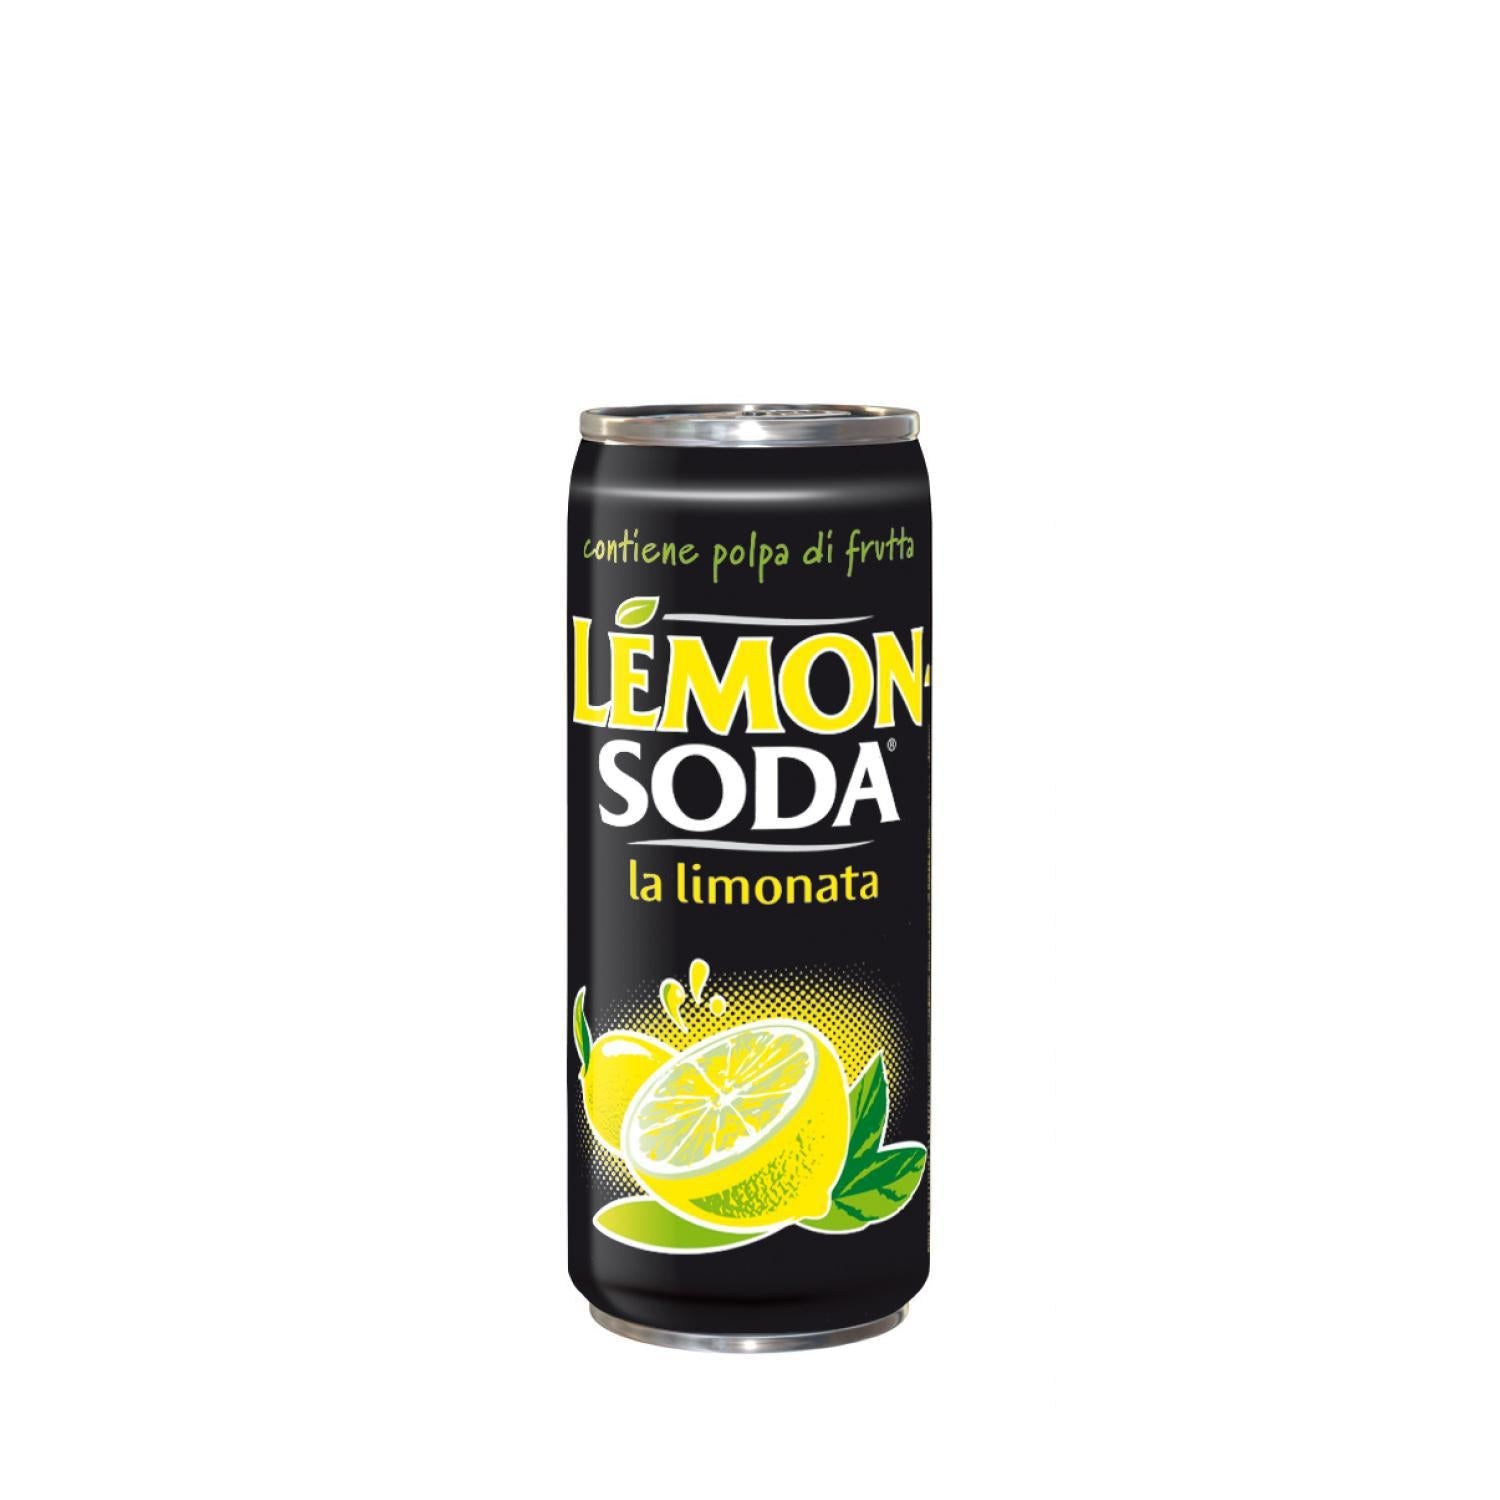 Freedea - Lemonsoda